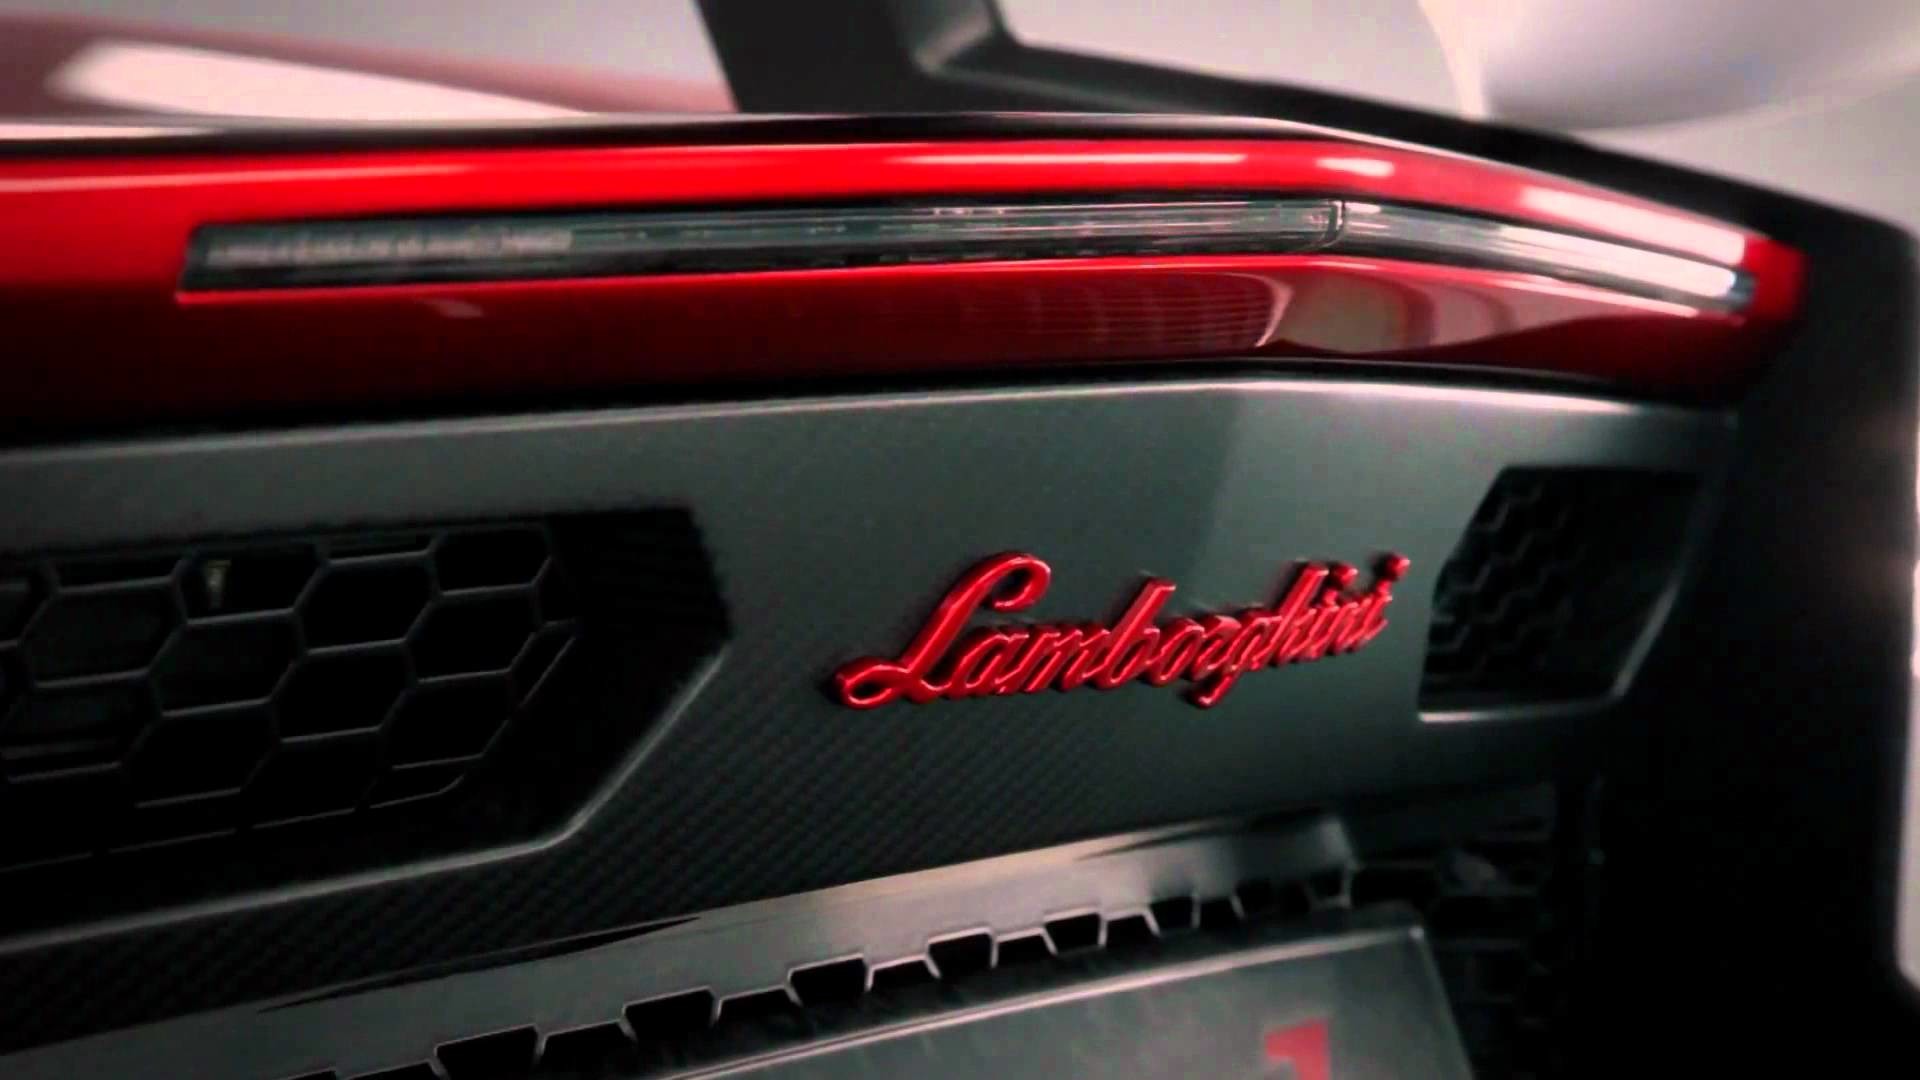 Wallpaper Full HD 1080p Lamborghini New Image